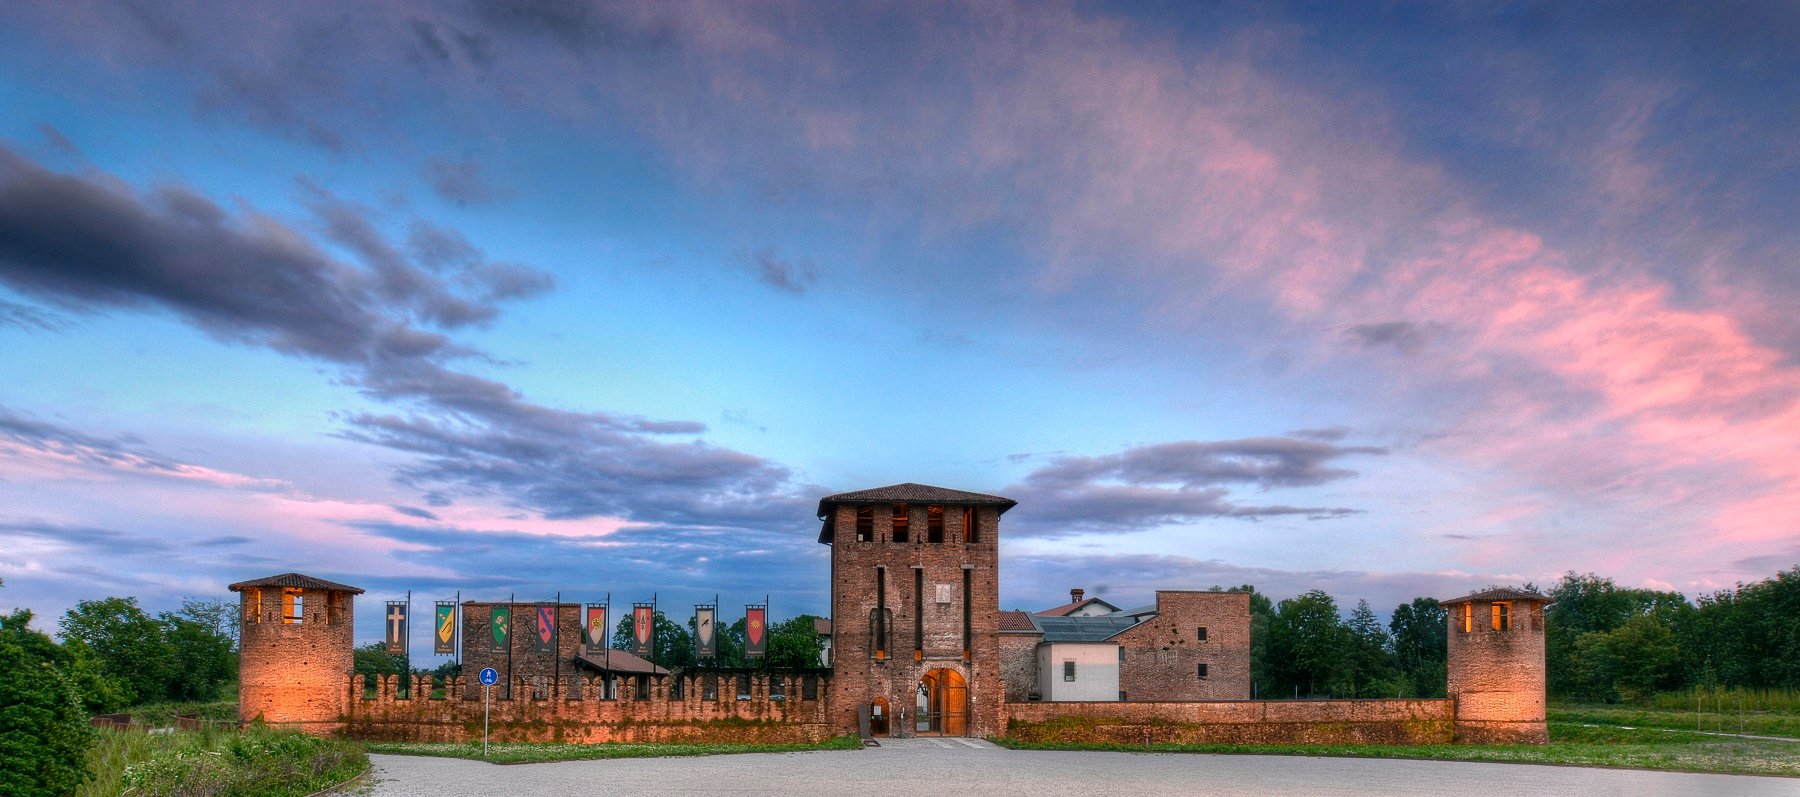 Castello Visconteo di Legnano, detto anche Castello di San Giorgio